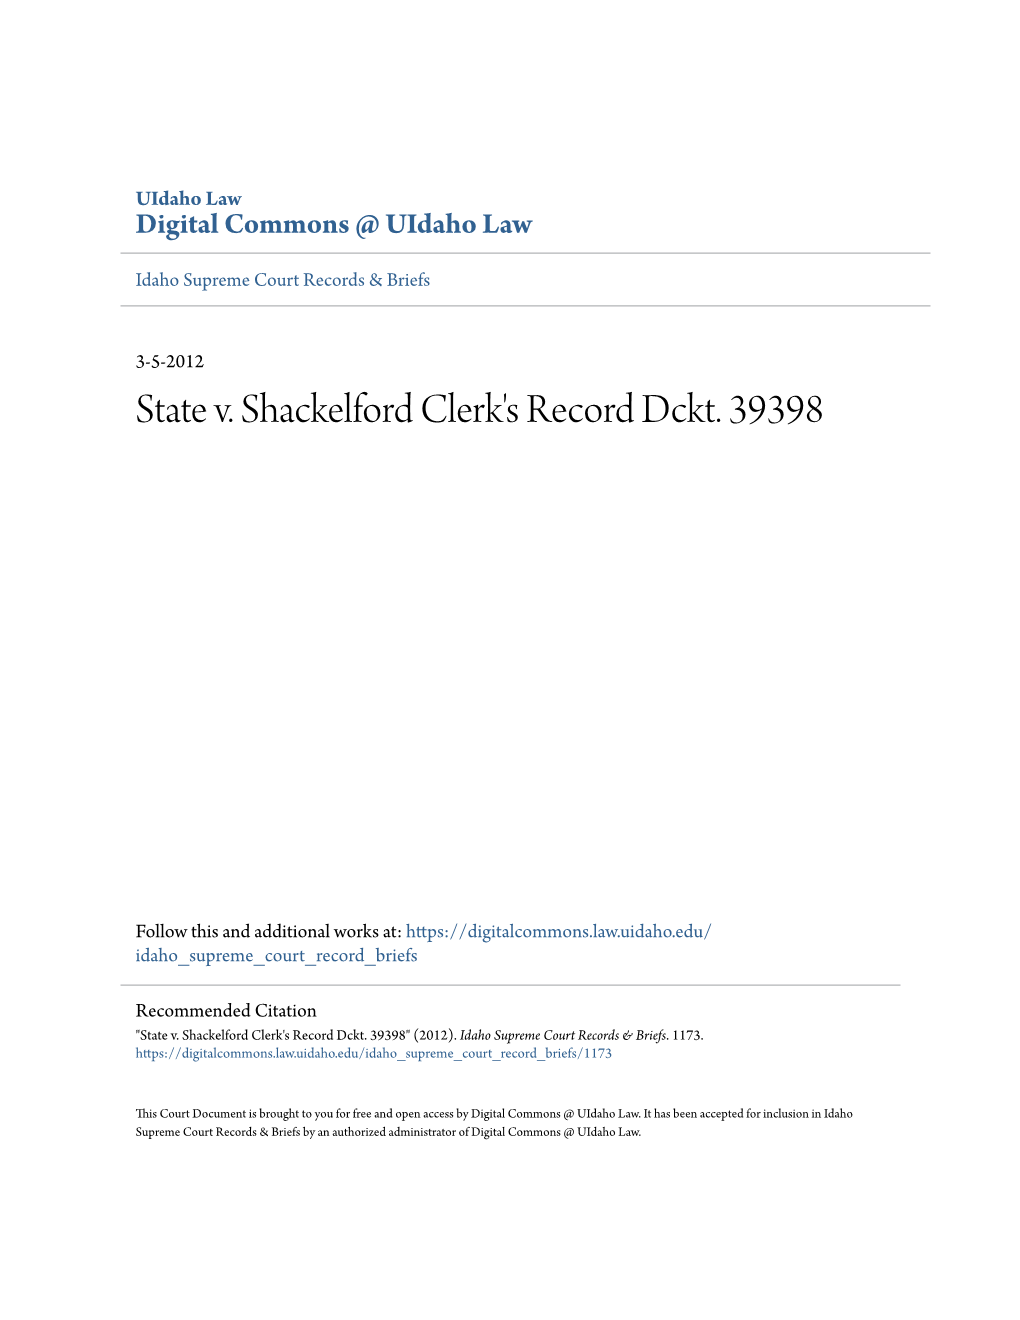 State V. Shackelford Clerk's Record Dckt. 39398